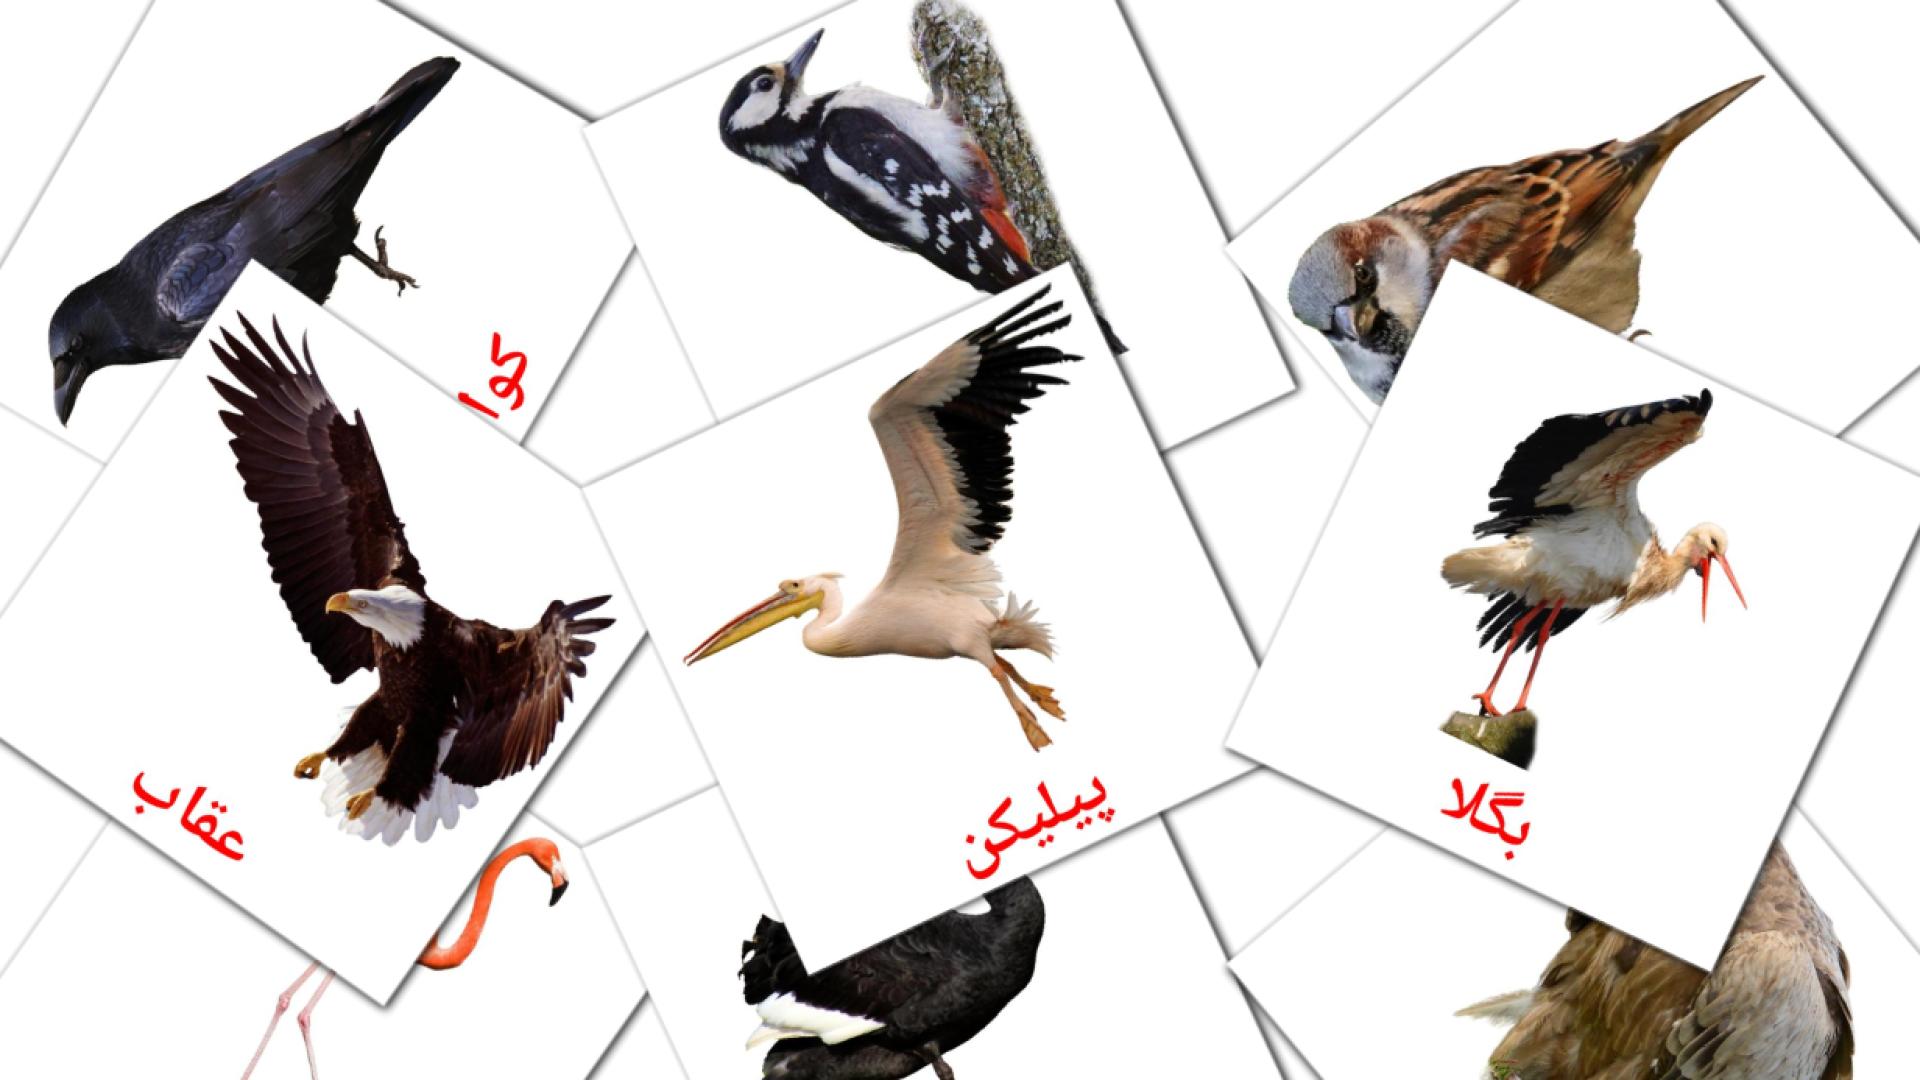 18 جنگلی پرندے flashcards